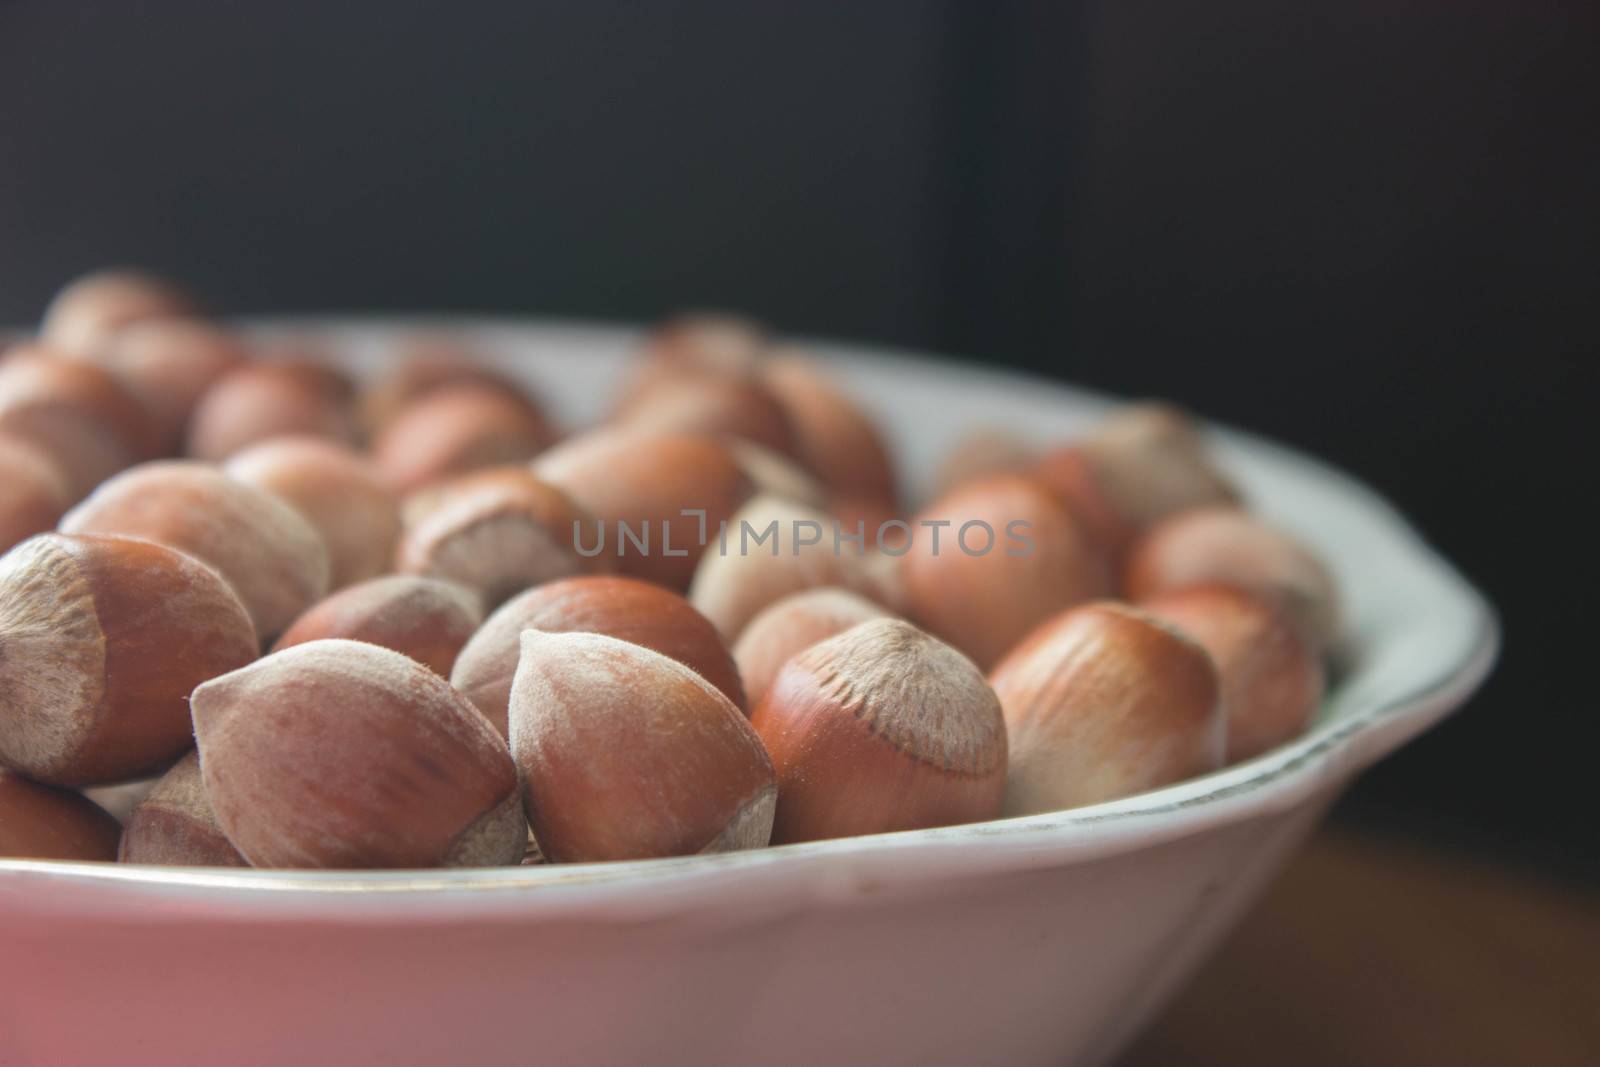 hazelnuts in a plate by liwei12